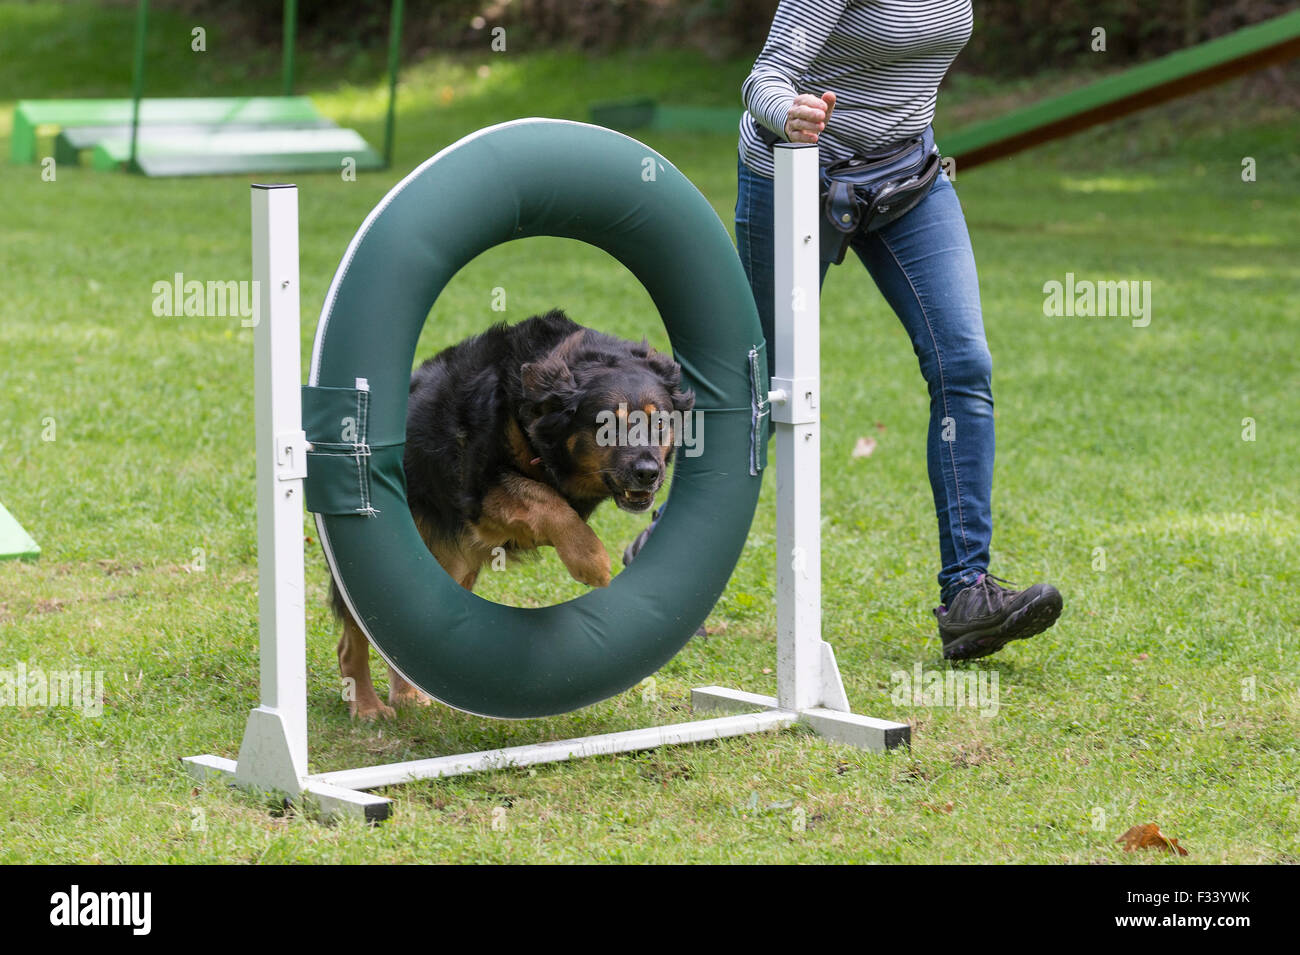 Un mixed breed dog sautant à travers le pneu obstacle pendant la formation d'agilité. Banque D'Images